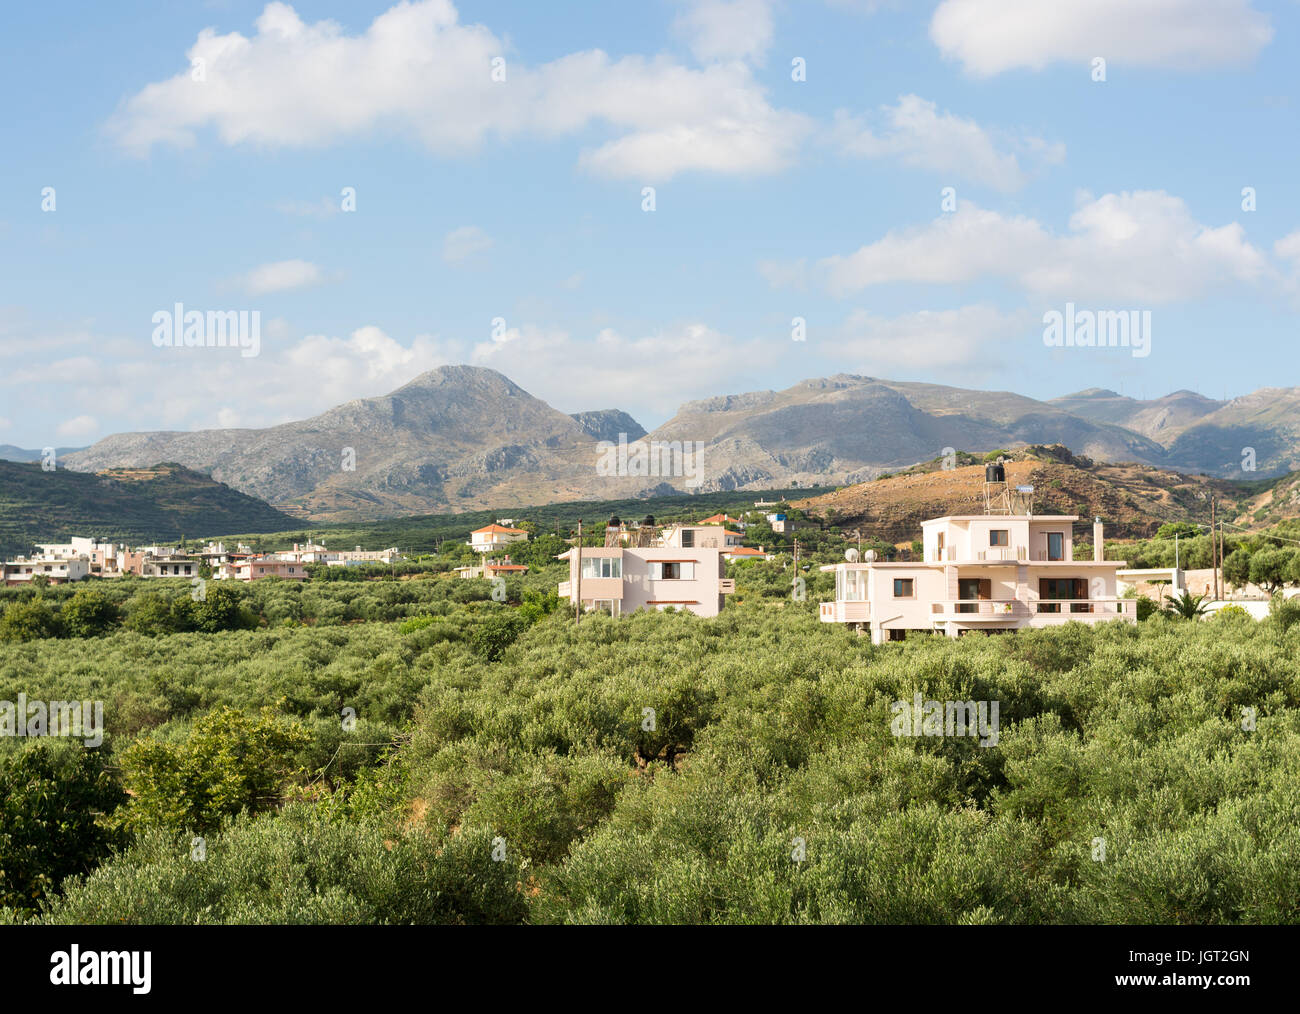 Casas y casas construidas entre y alrededor de los olivares en las estribaciones de las montañas de Creta Occidental, Kissamos, Creta, Grecia Foto de stock